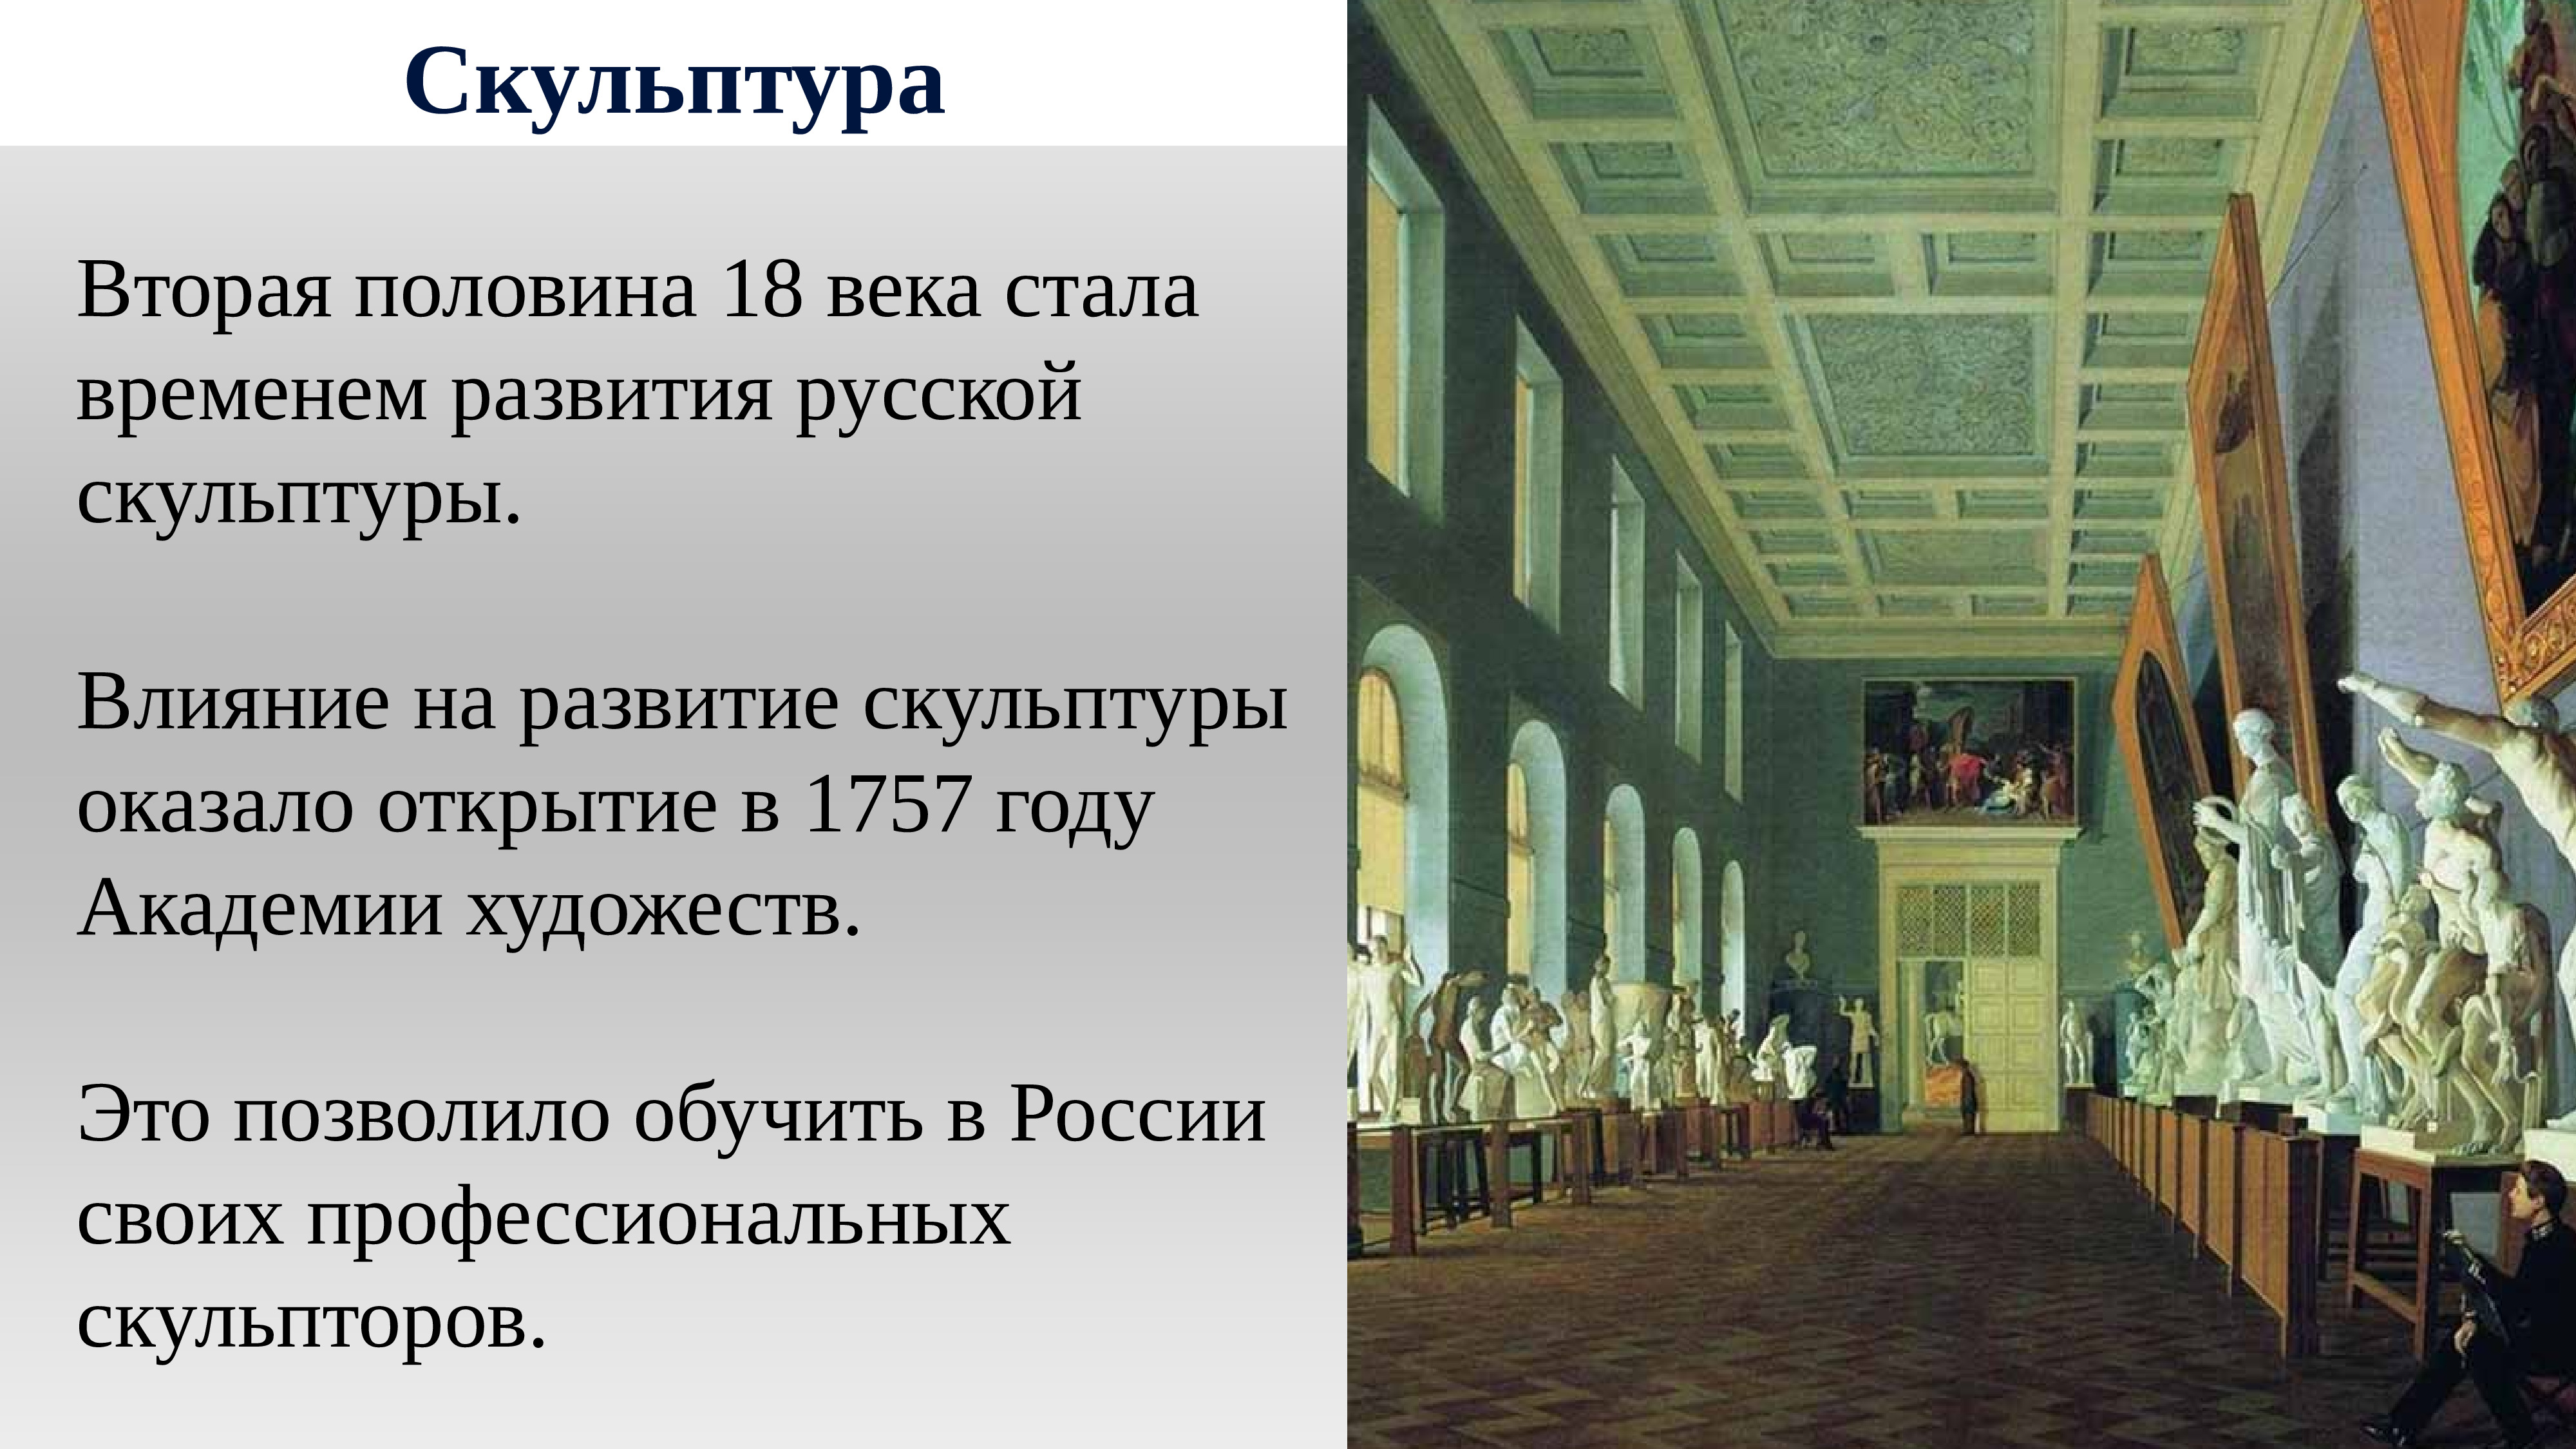 Культура России во 2 половине 18 века